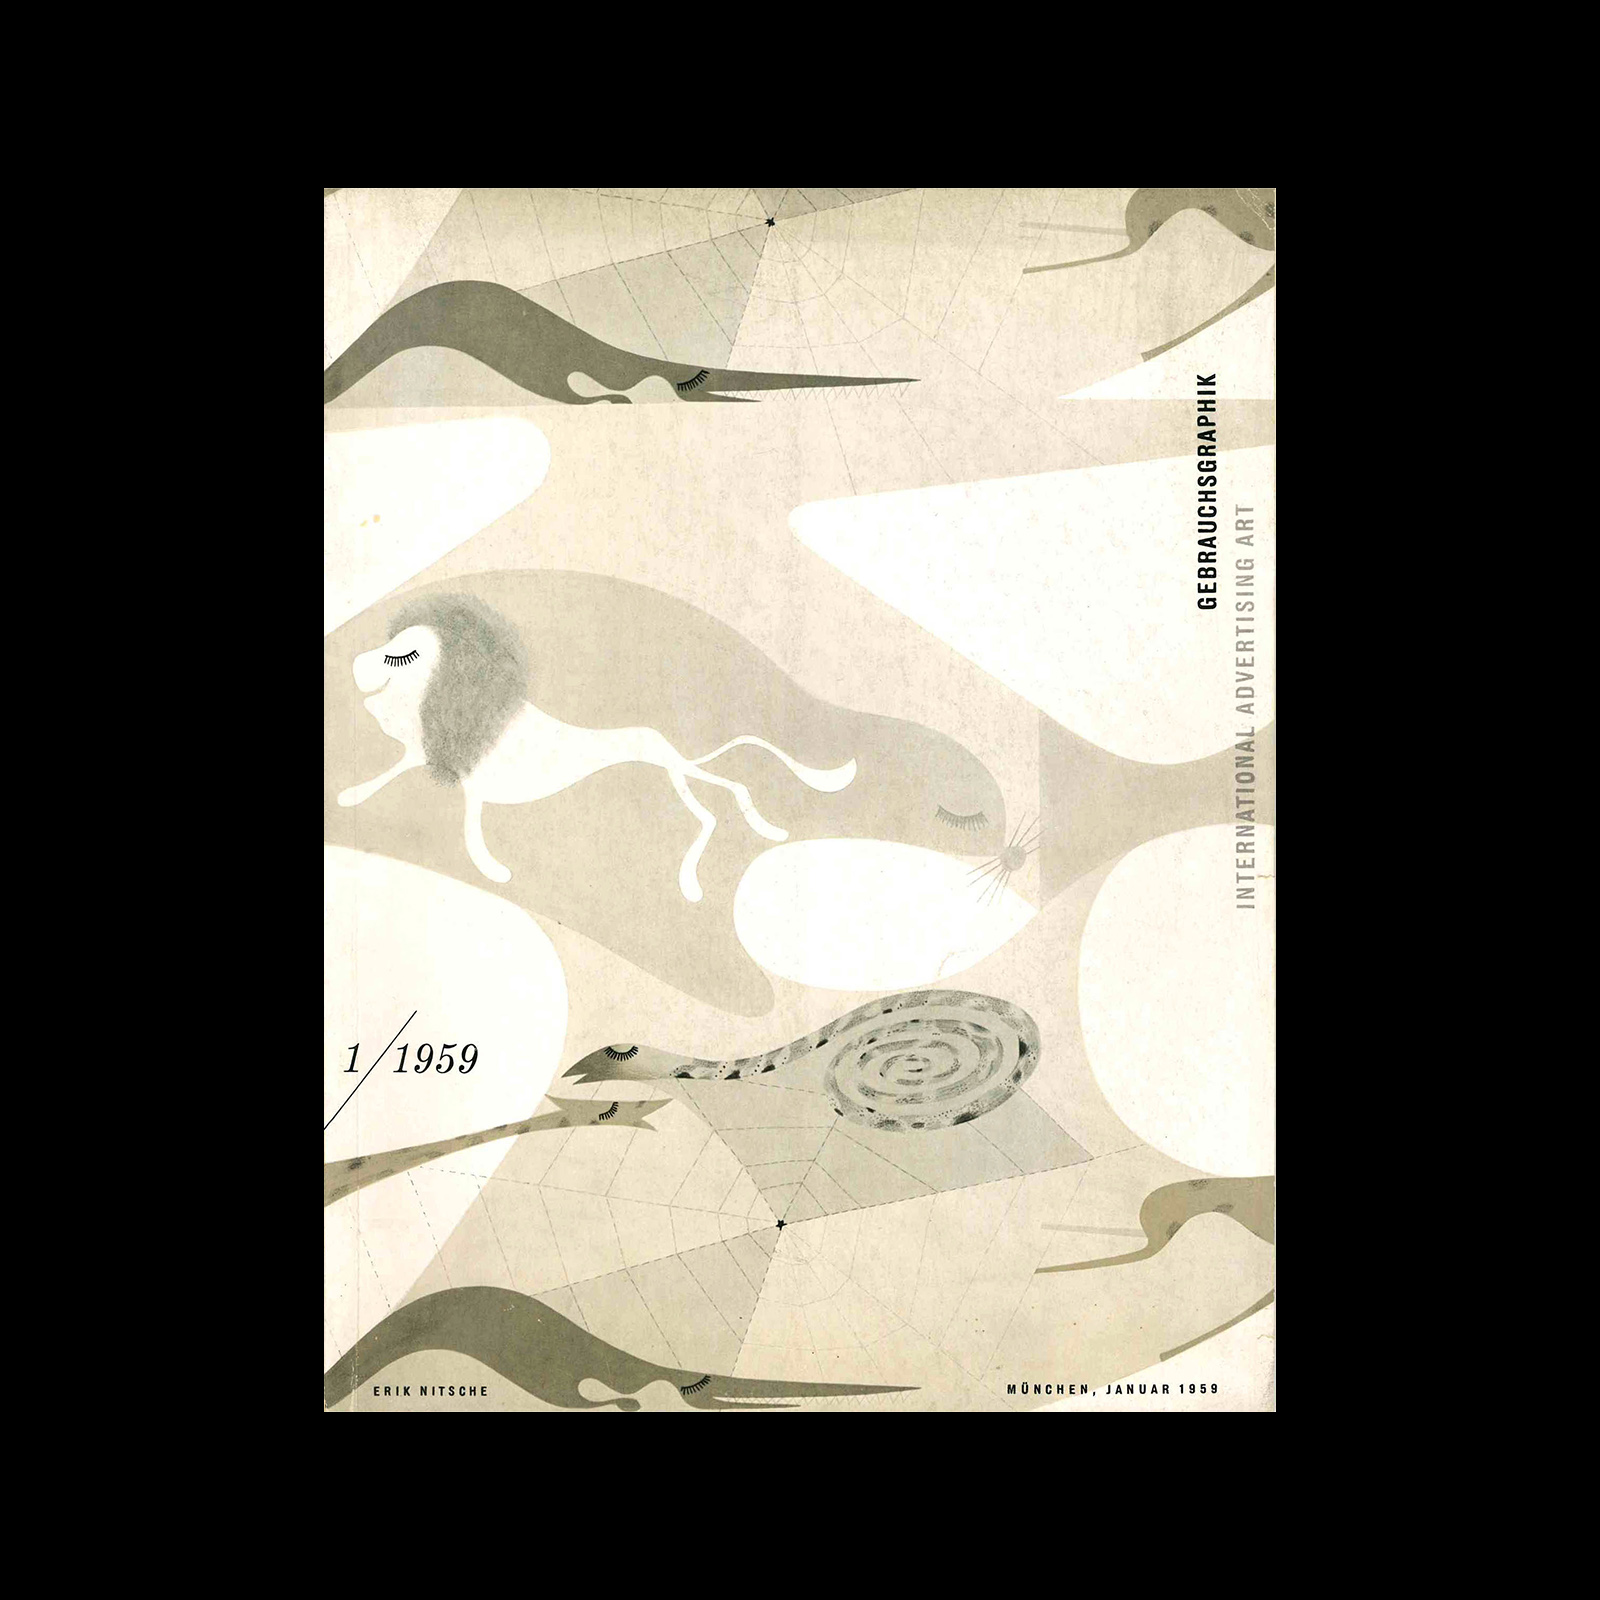 Gebrauchsgraphik, 1, 1959. Cover design by Erik Nitsche